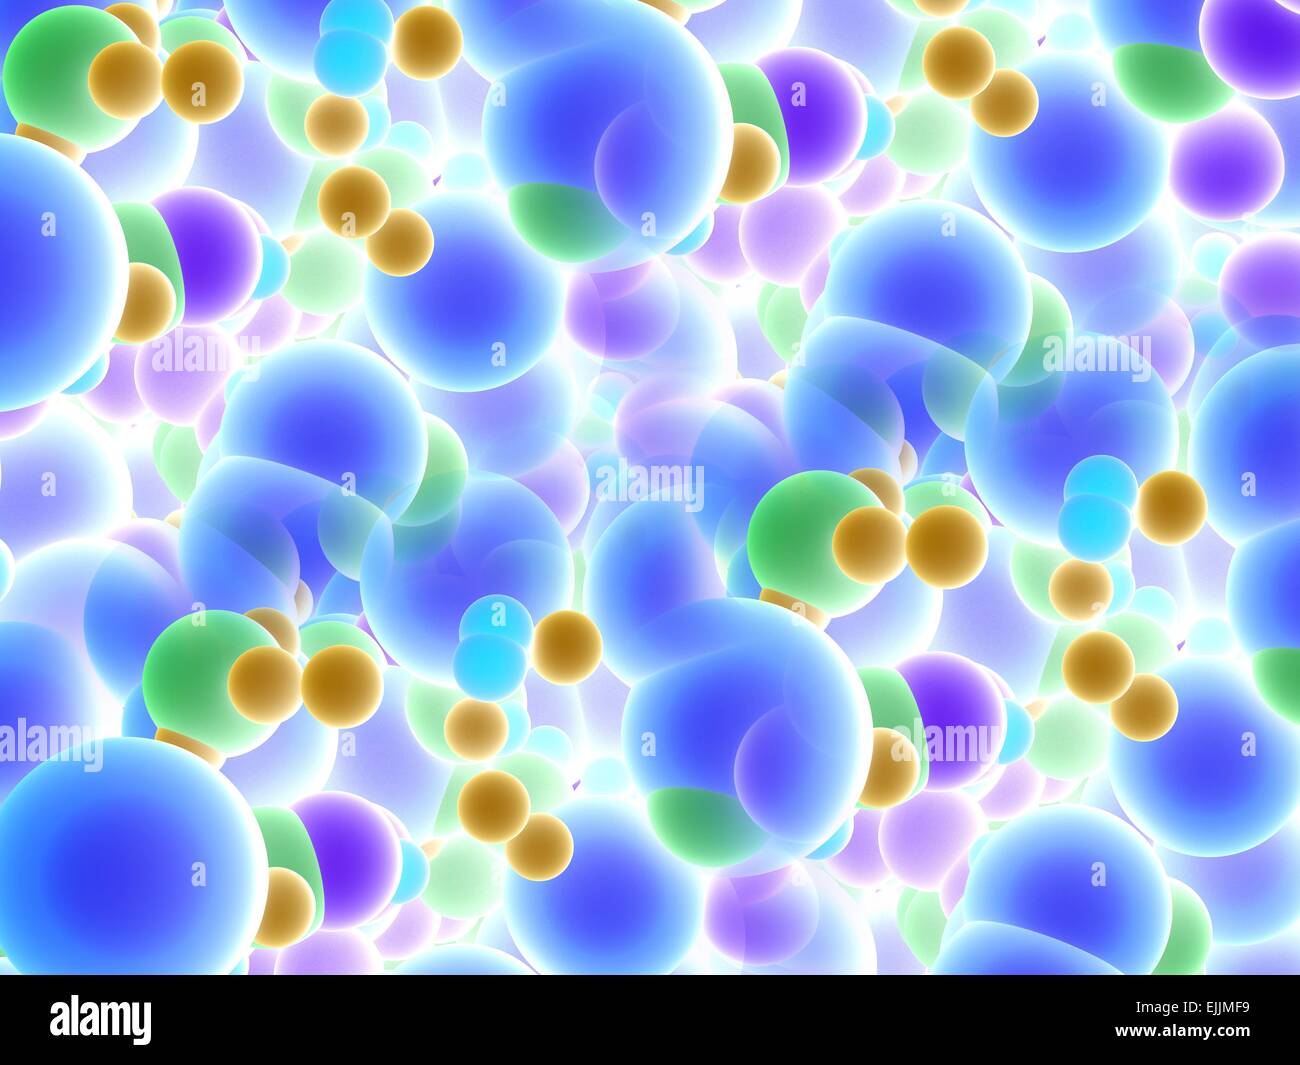 Abstract molecule, computer artwork. Stock Photo